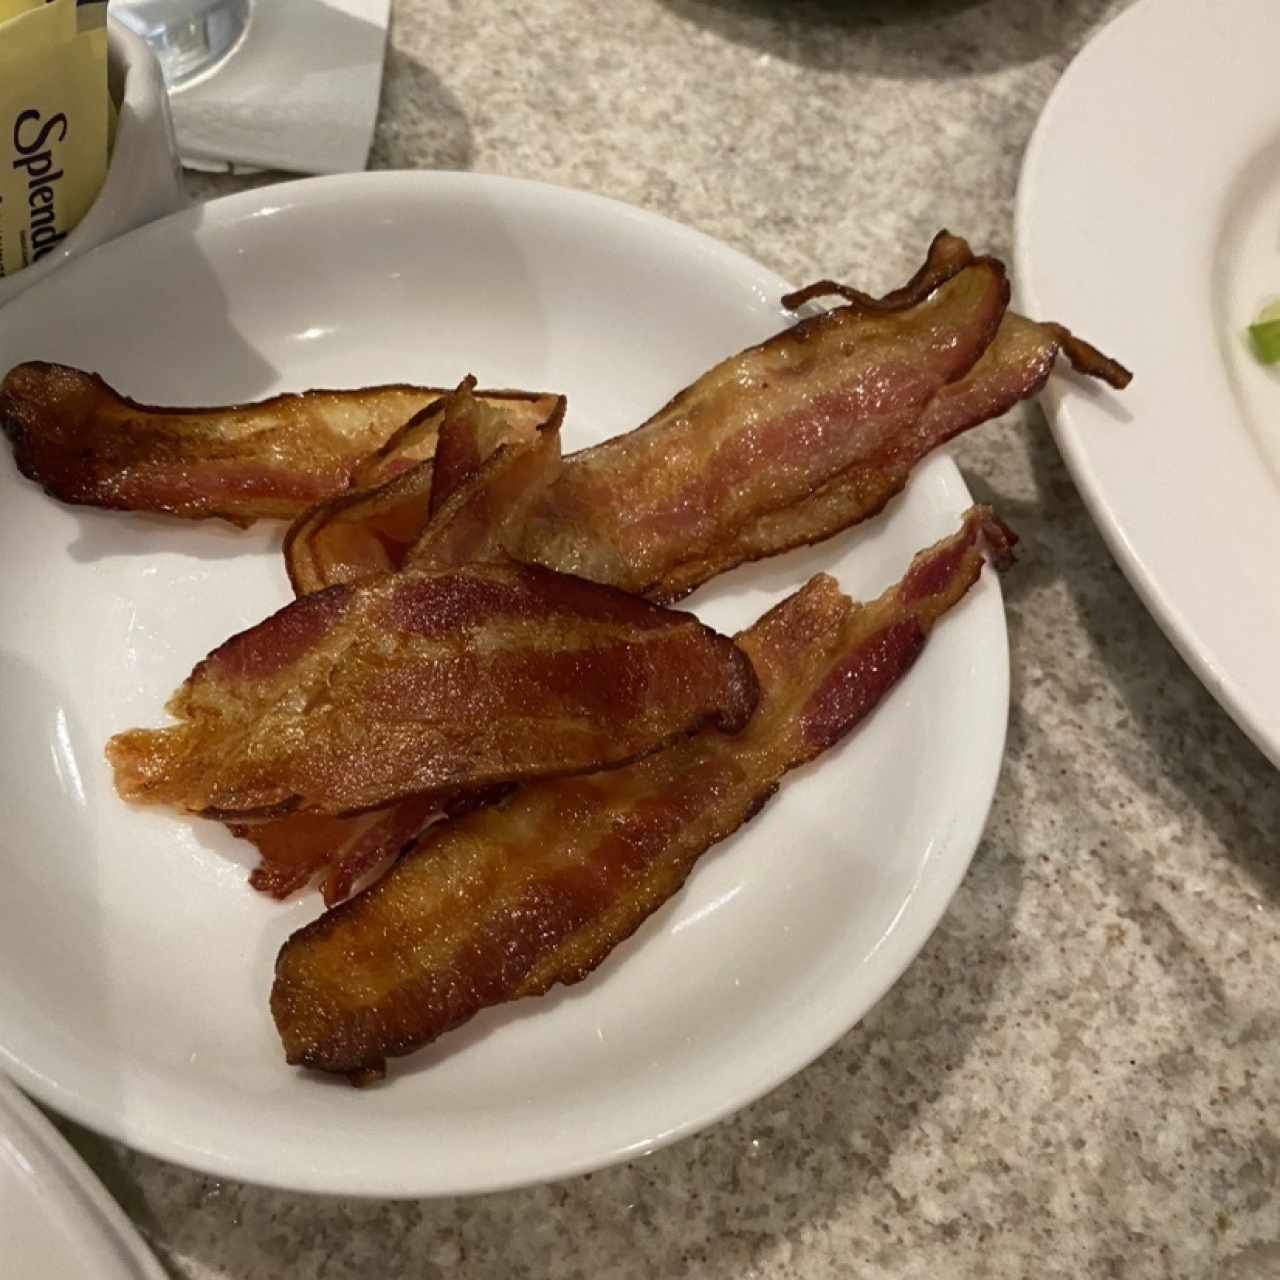 Extra bacon